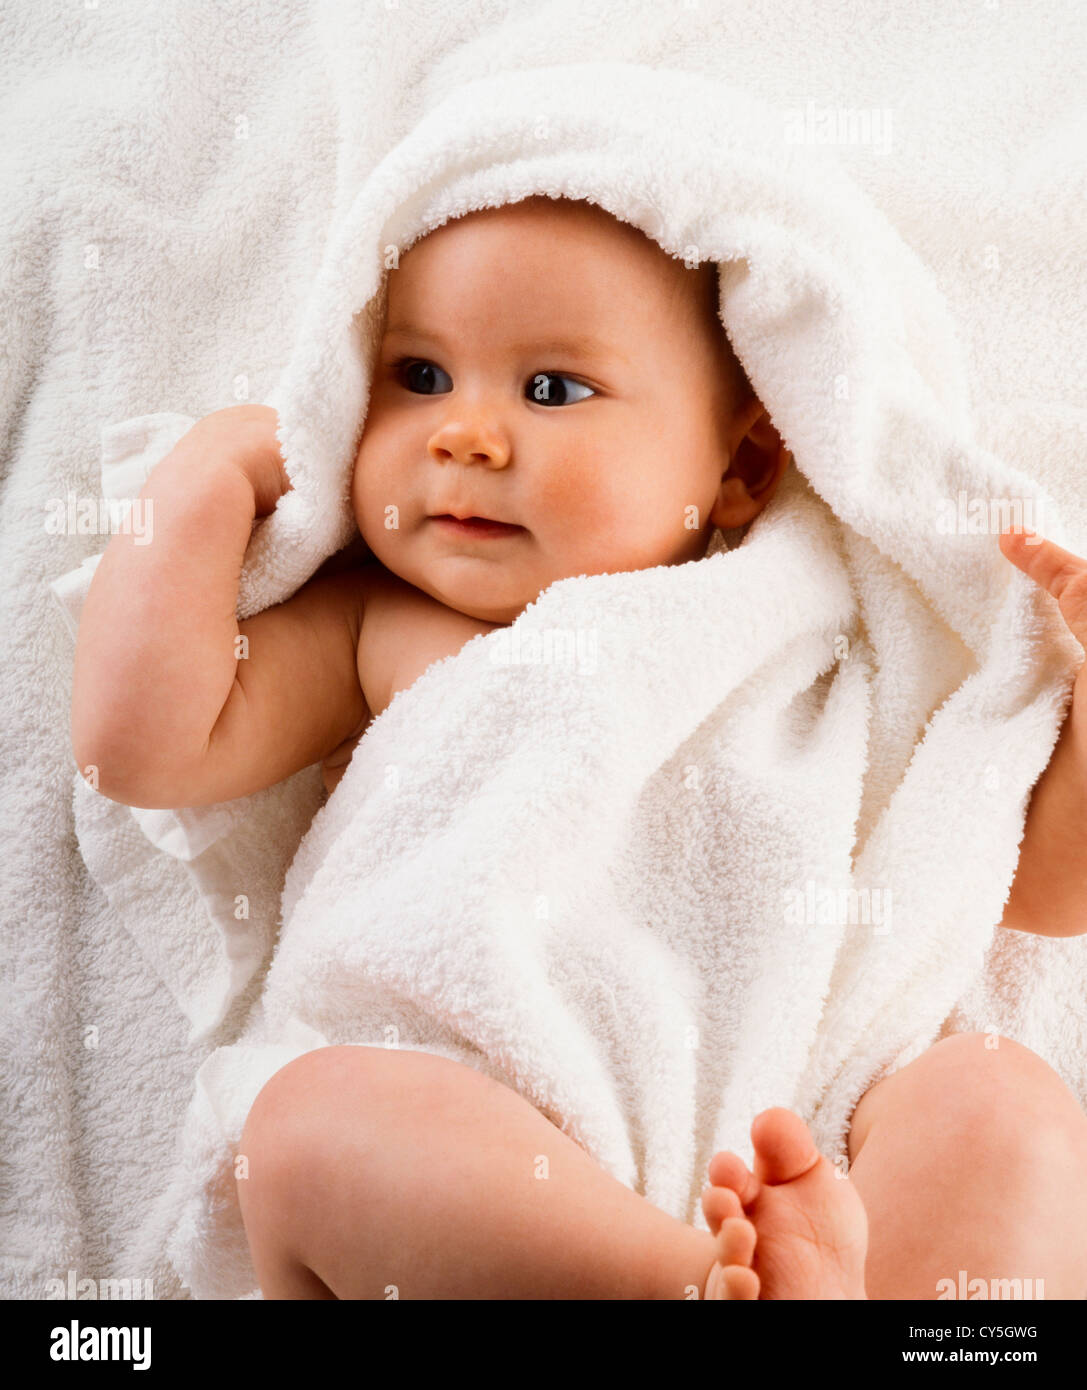 14,180 en la categoría «Bebé 6 meses» de imágenes, fotos de stock e  ilustraciones libres de regalías